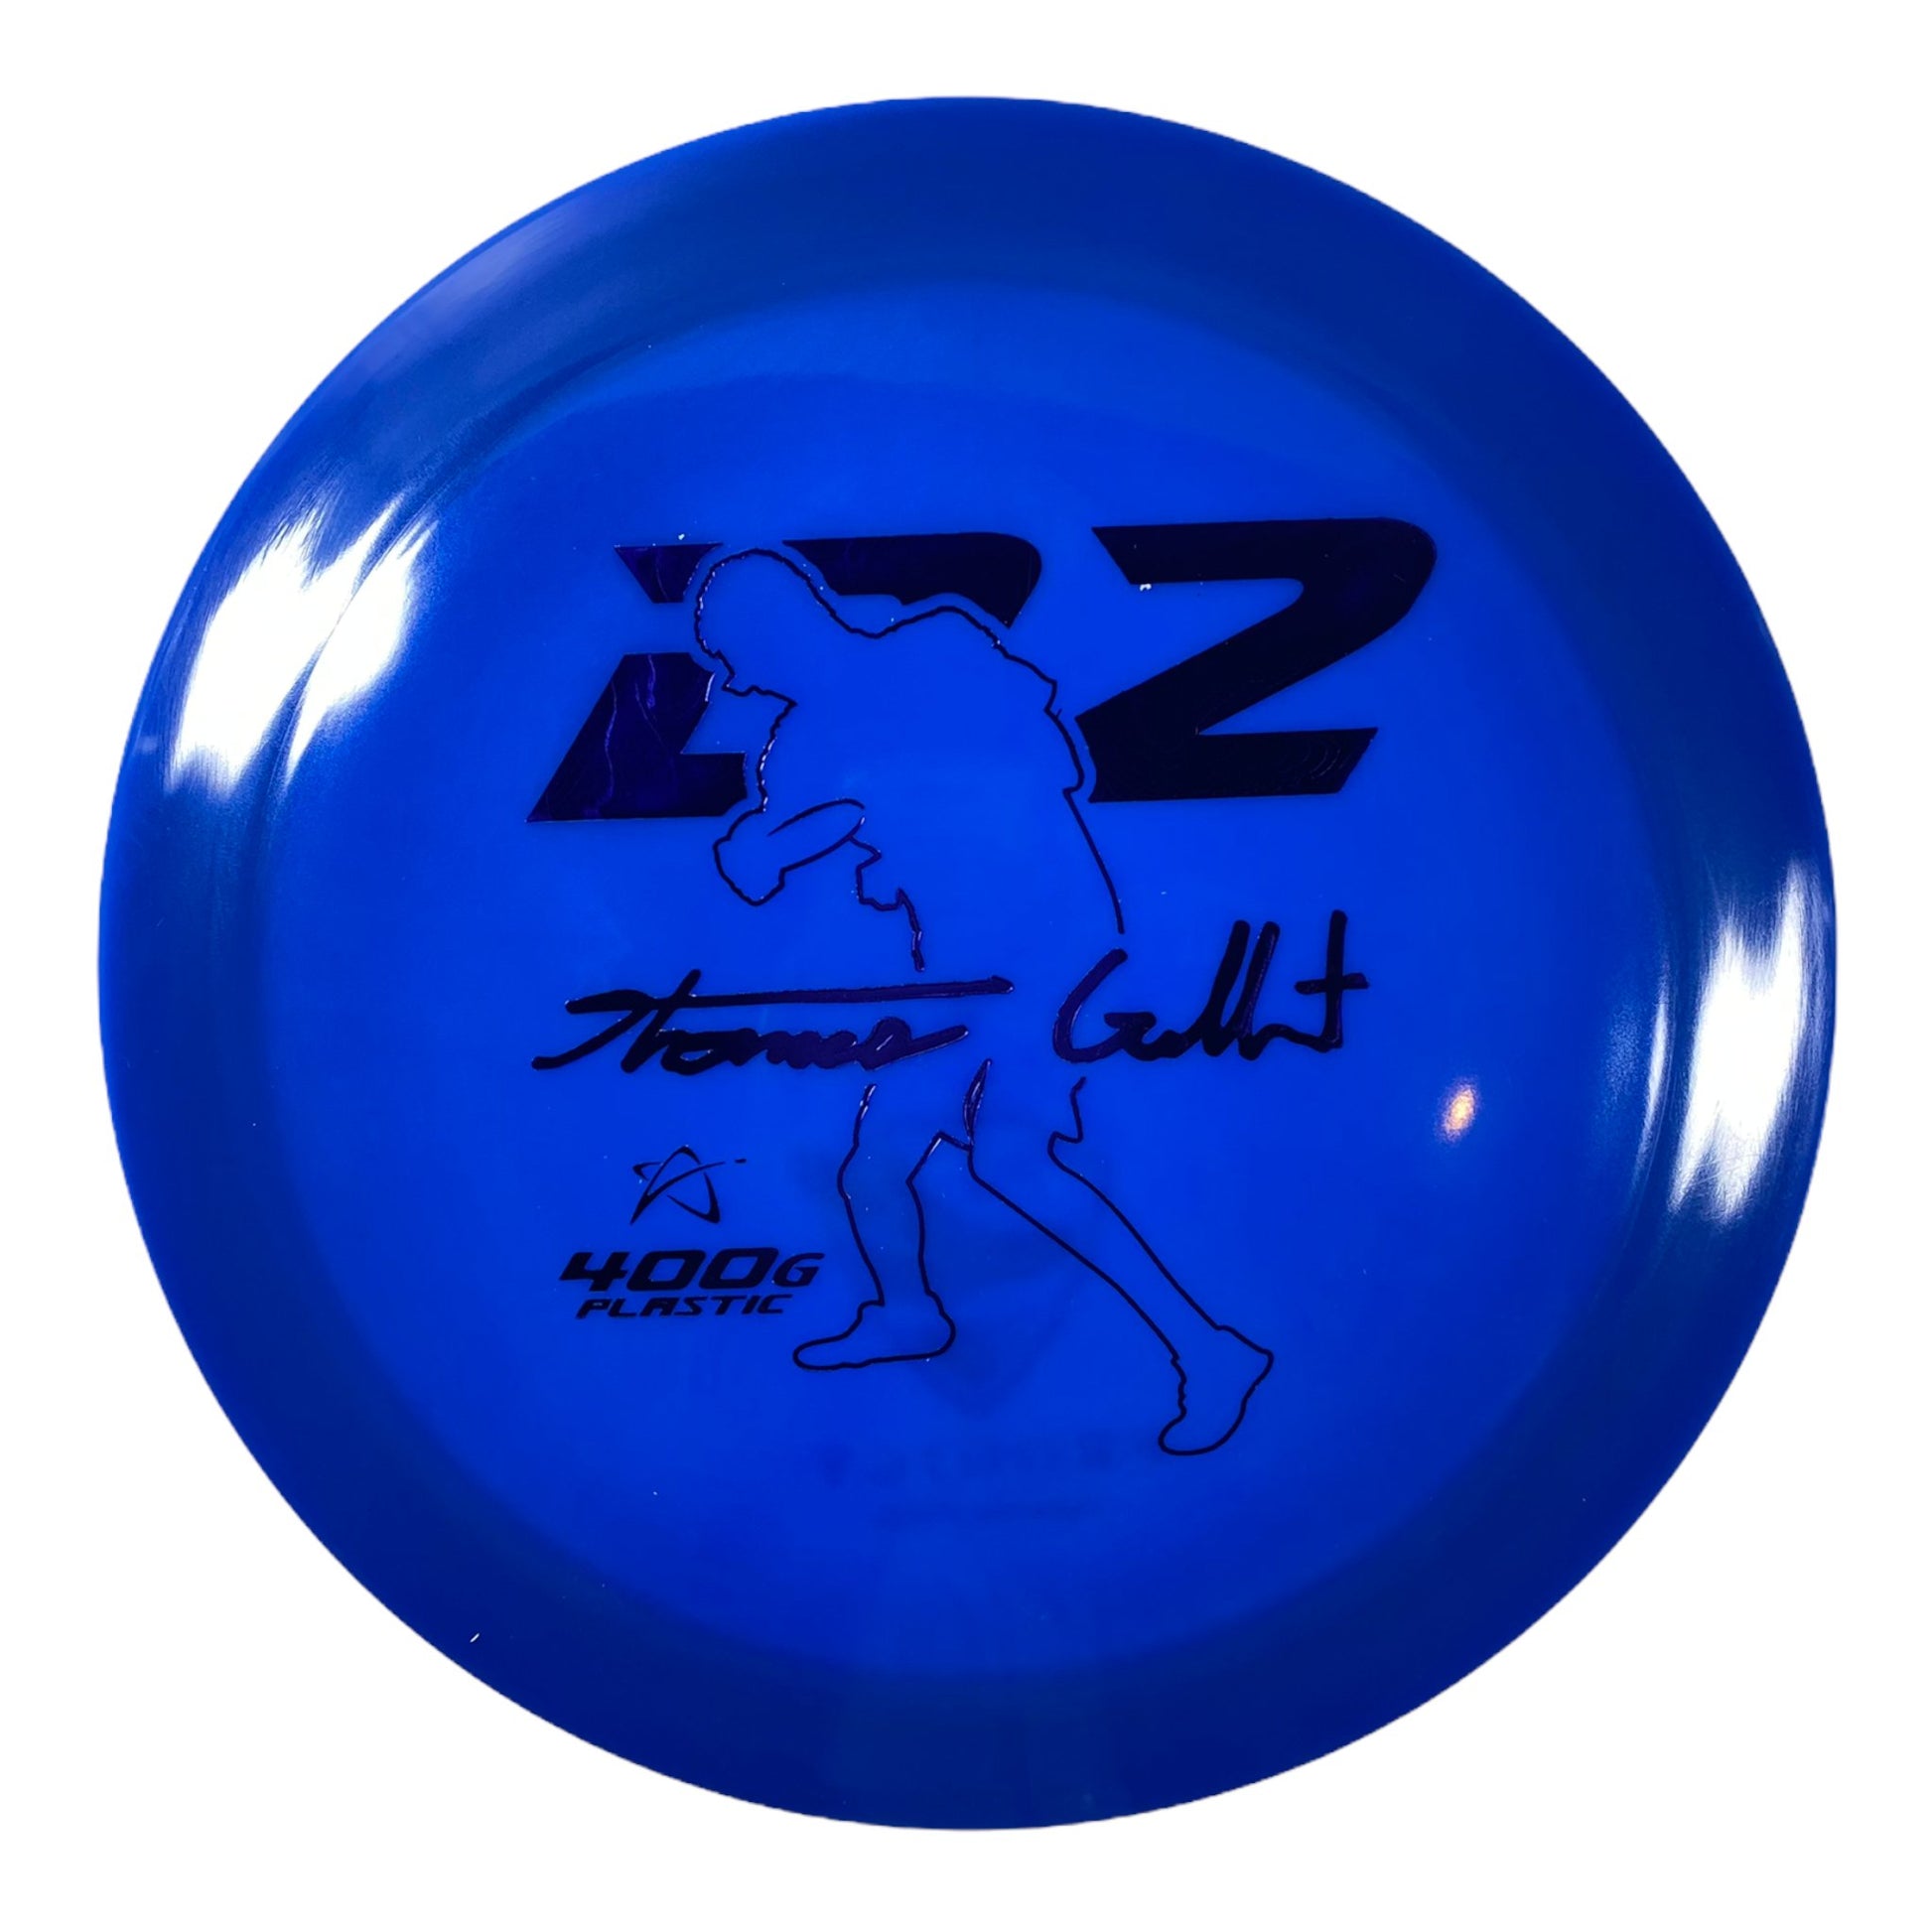 Prodigy Disc D2 | 400G | Blue/Blue 172-173g (Thomas Gilbert) Disc Golf